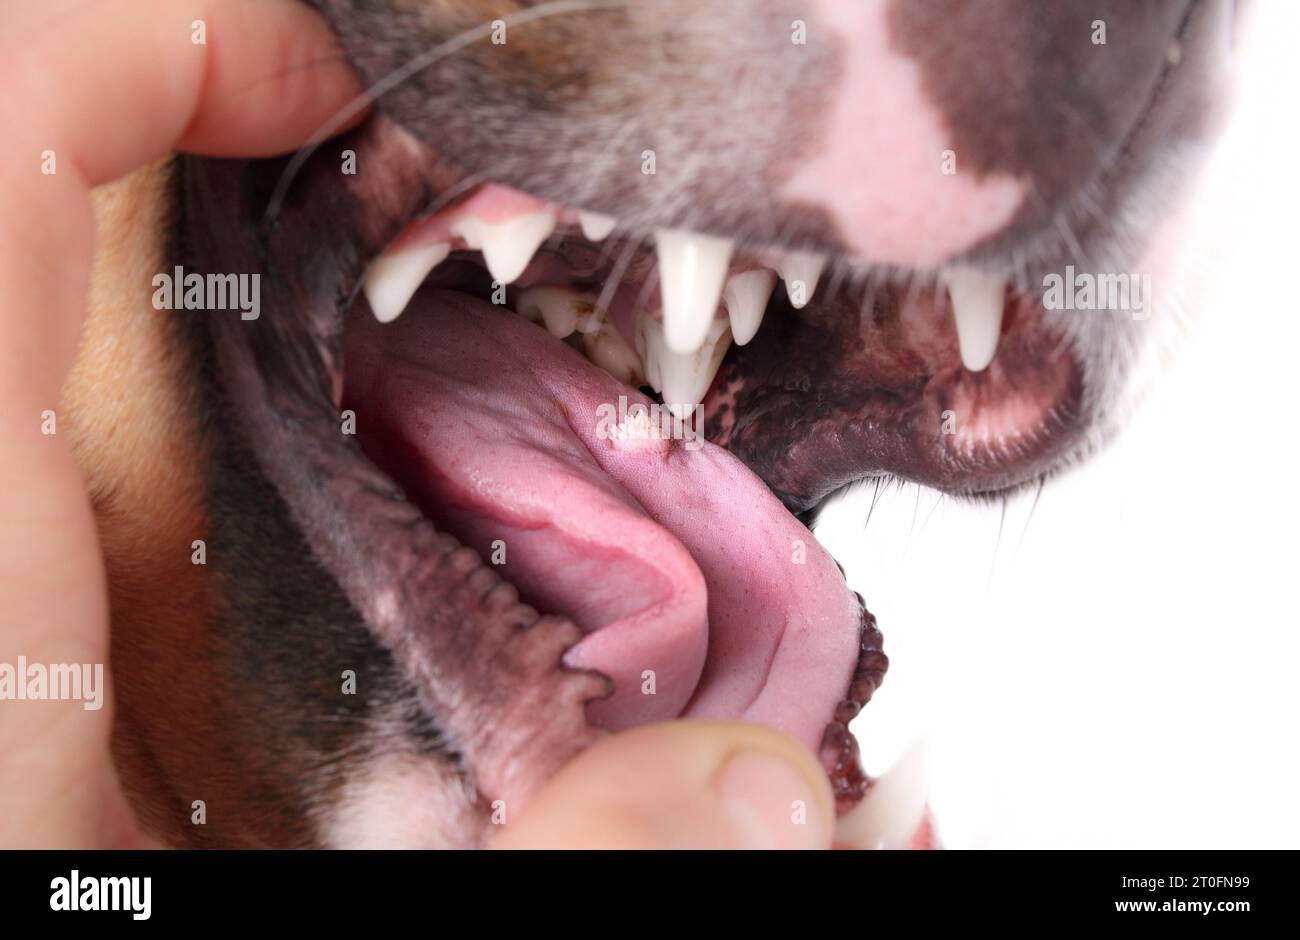 Cane con verruca orale o papilloma orale canino sulla lingua. Esame da parte del proprietario di animali domestici o del veterinario. Cavolfiore come il tumore benigno si diffonde cane per cane Foto Stock